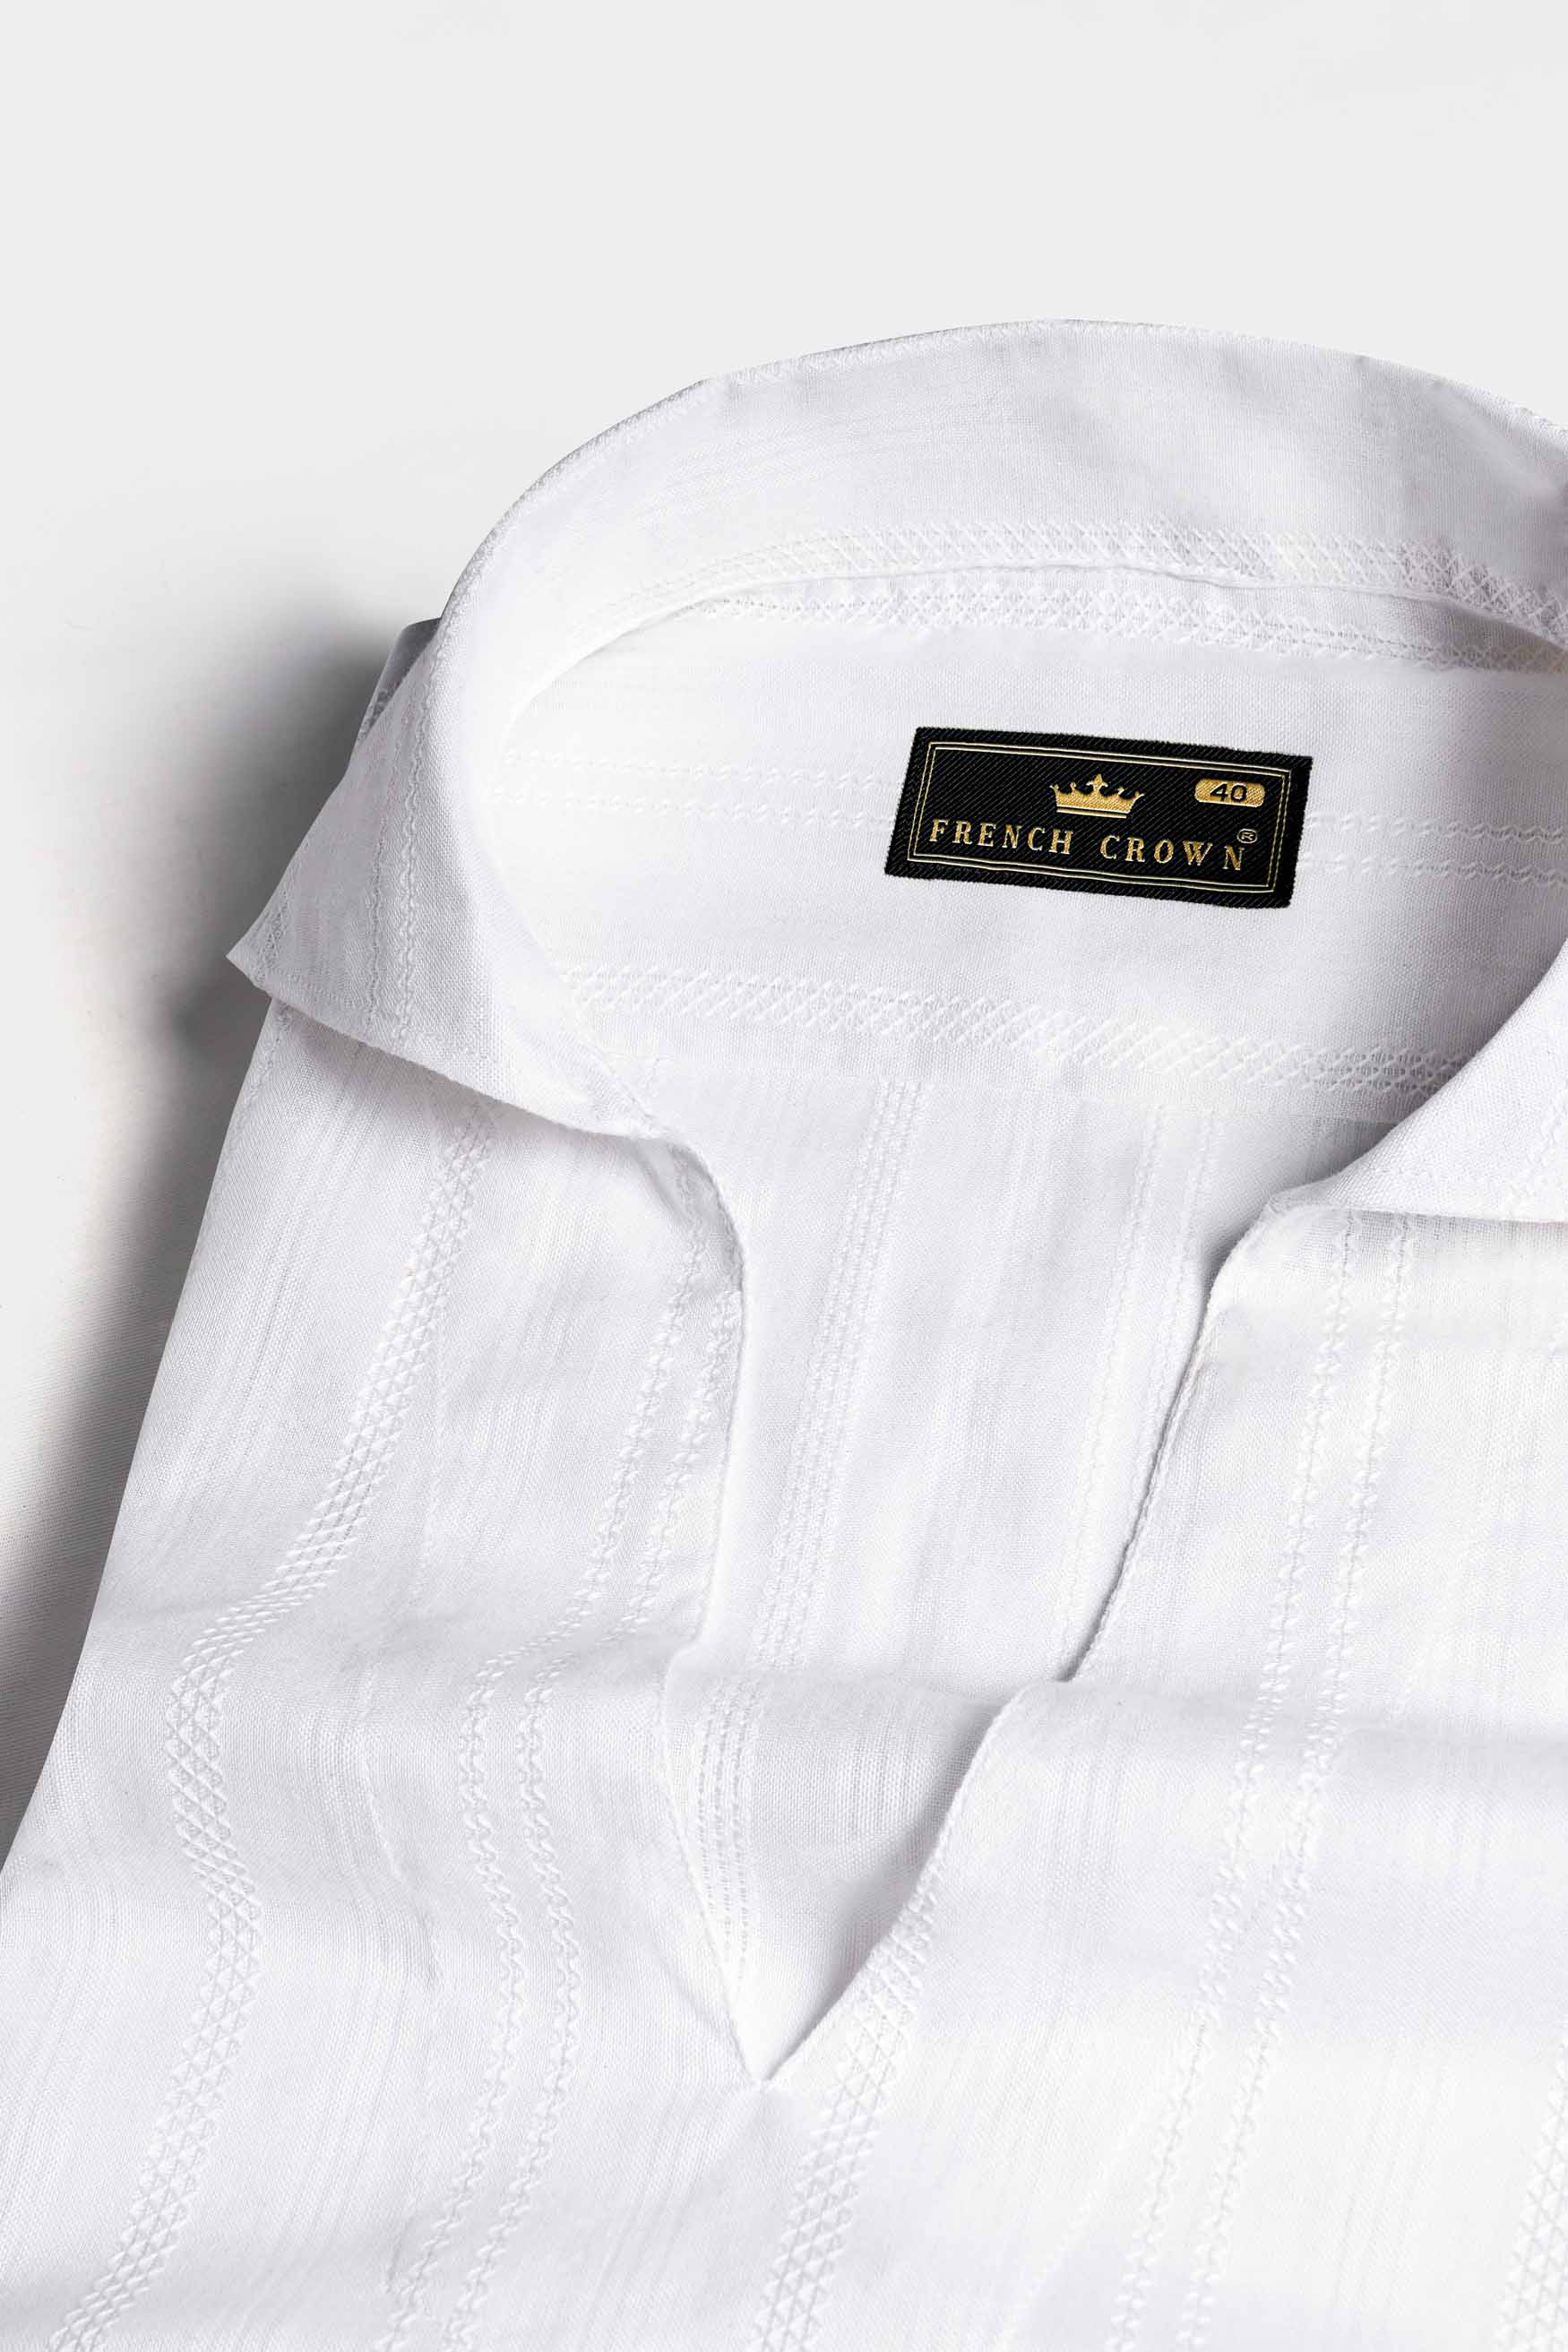 Bright White Dobby Textured Premium Giza Cotton Designer Shirt